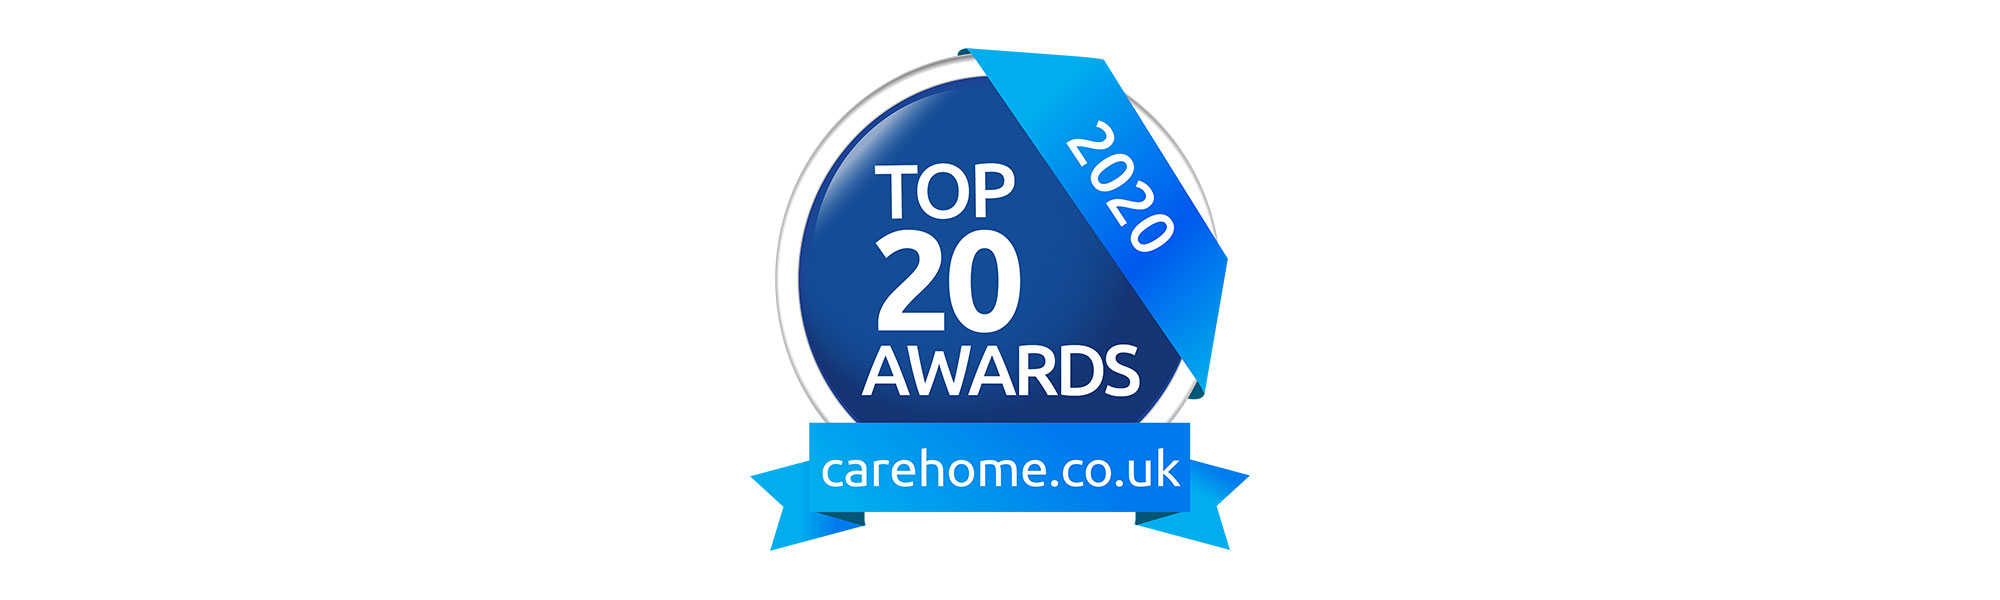 Carehome-awards-top-20